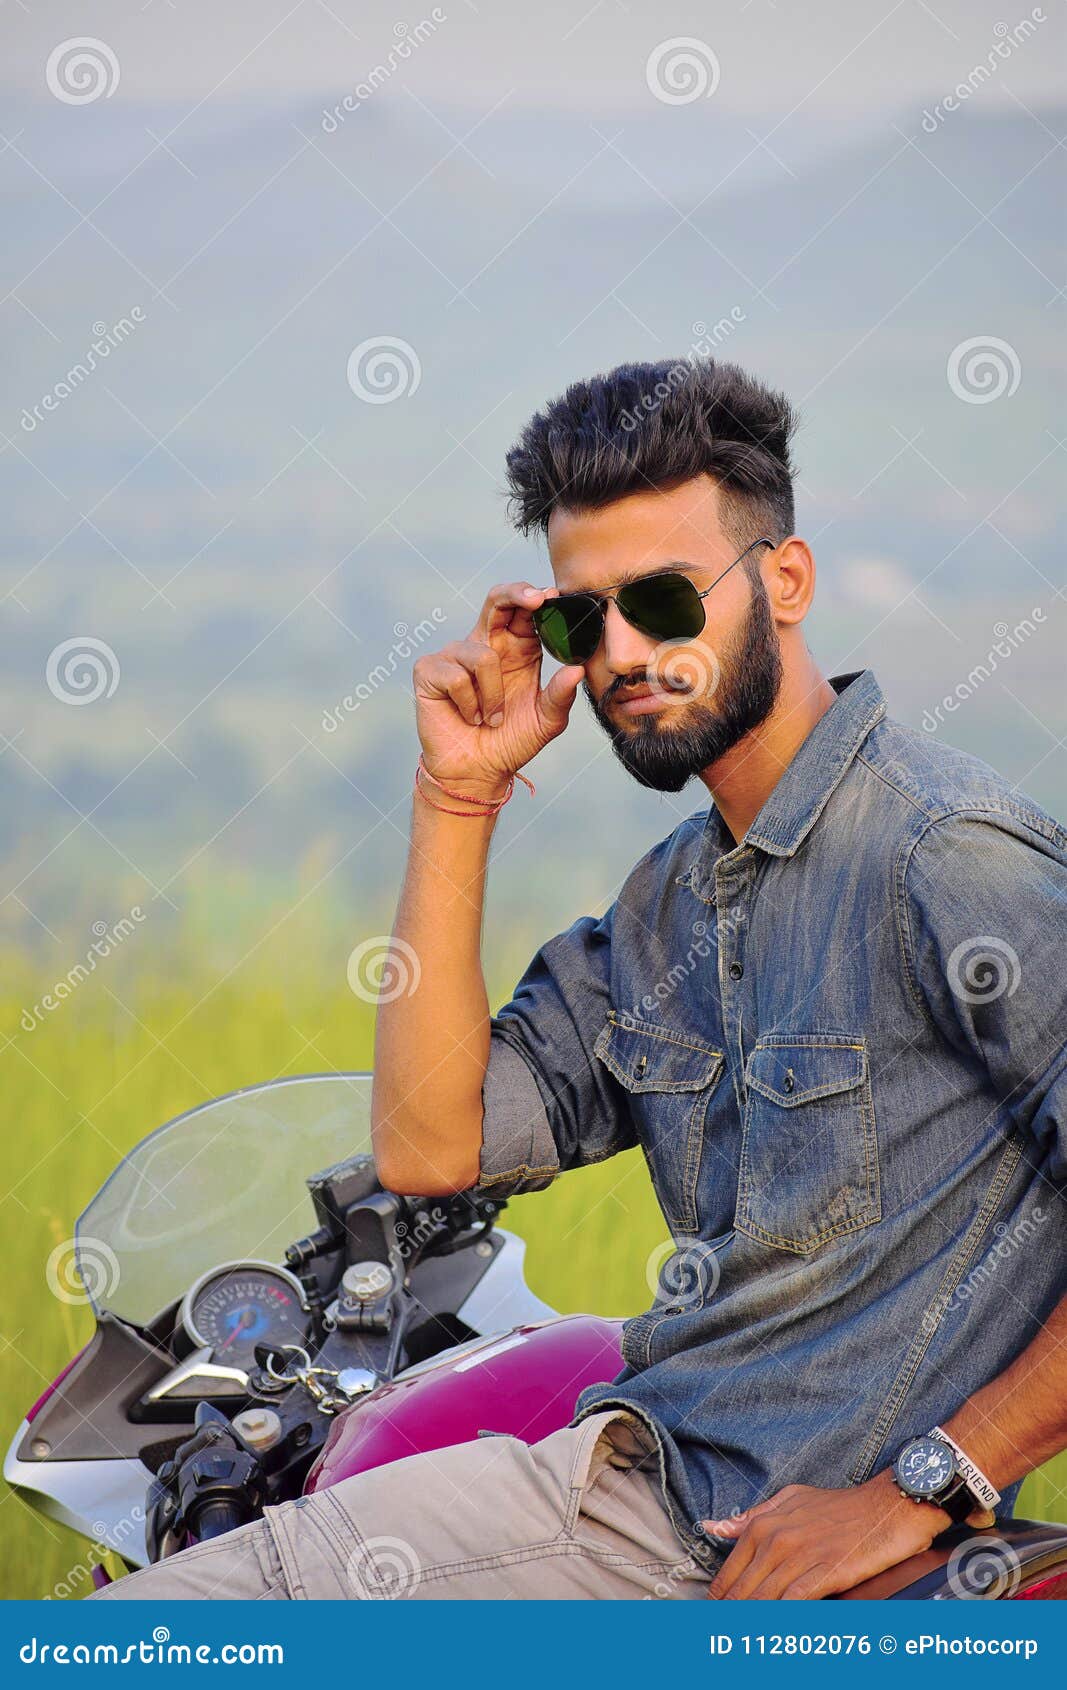 indian boy posing motorbike pune maharashtra indian boy posing motorbike pune maharashtra 112802076